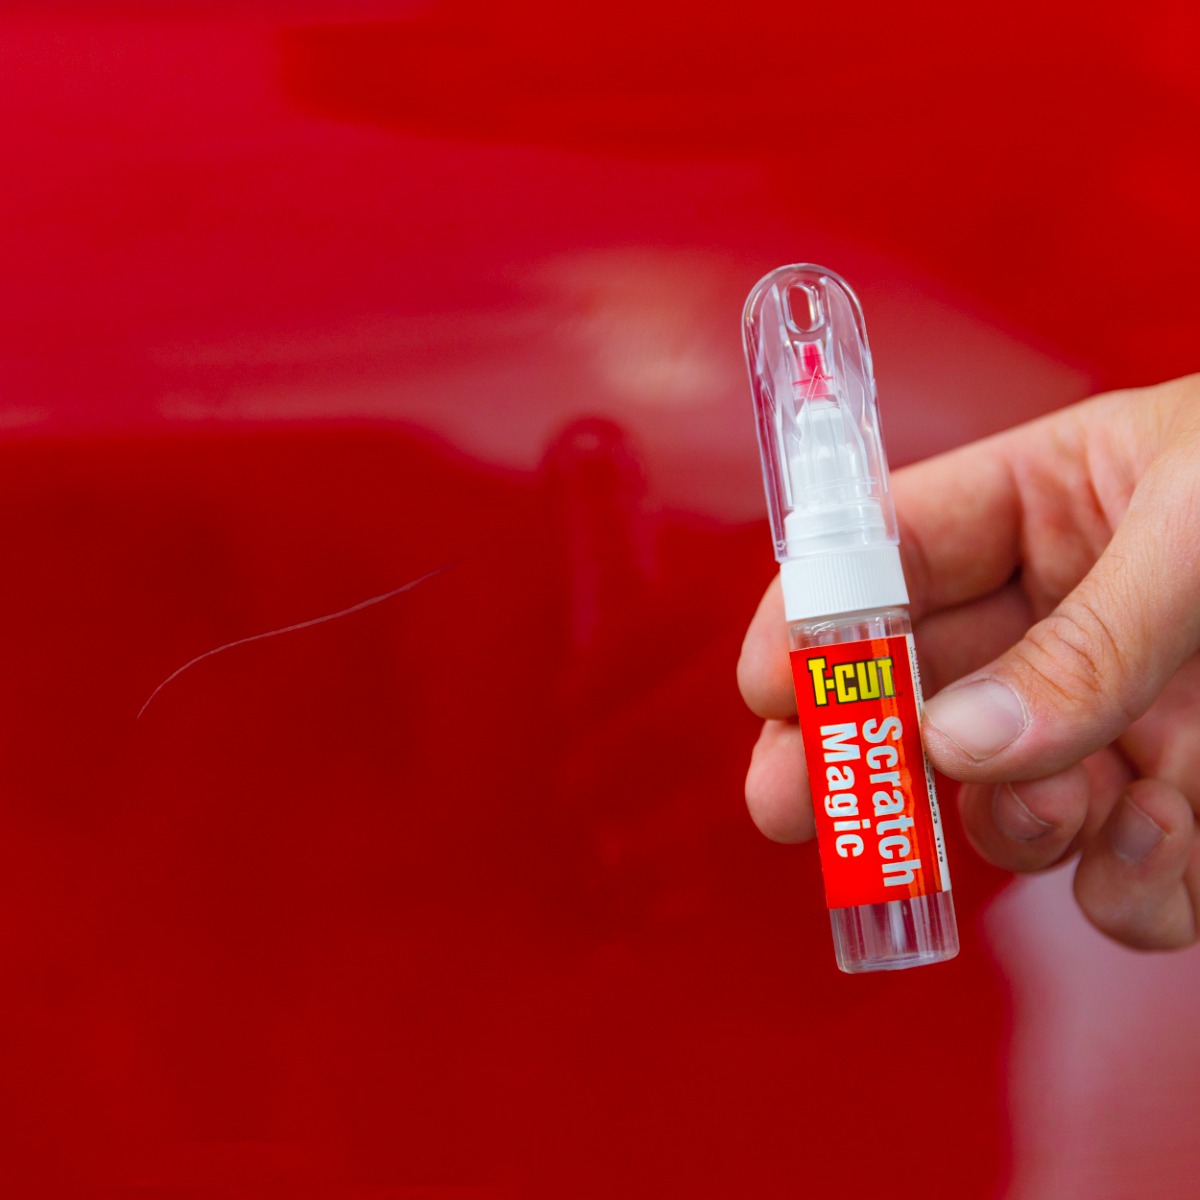 T-Cut scratch magic pen next to red car body panel